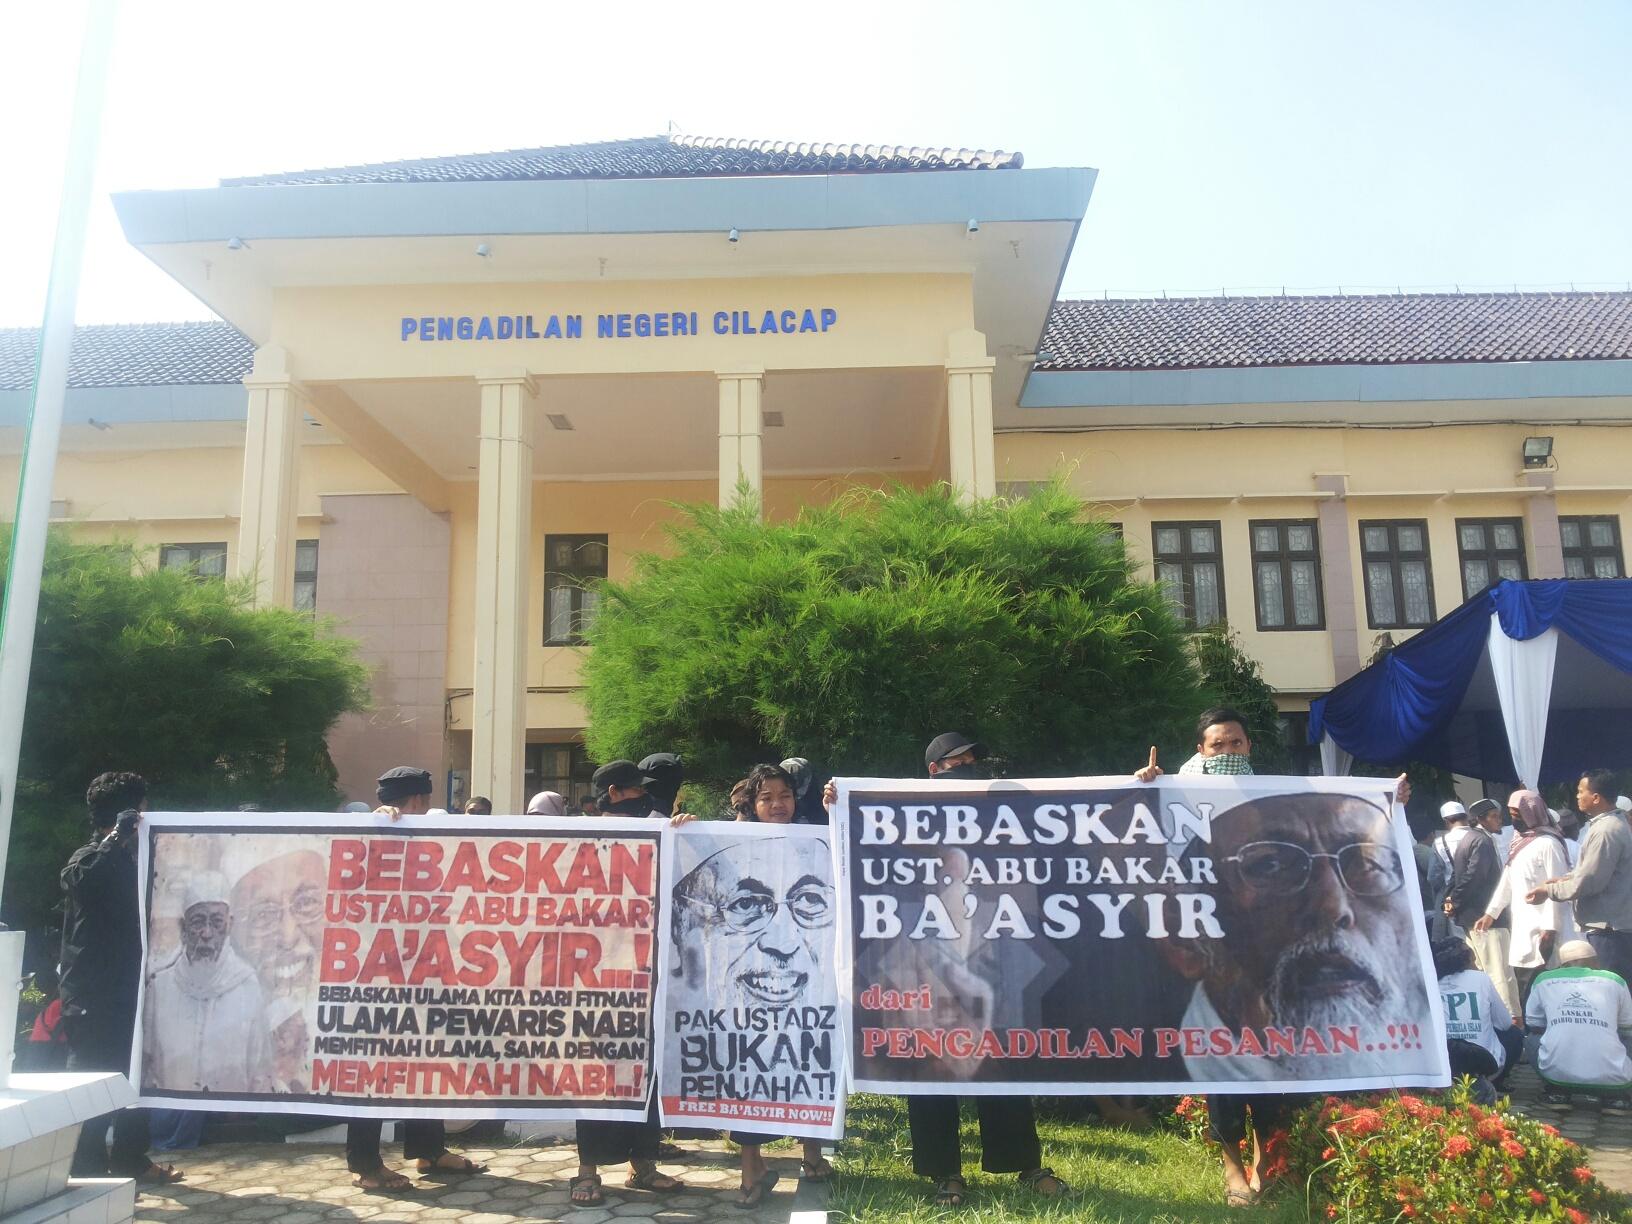 Jaksa Belum Bisa Beri Tanggapan, Sidang PK Ustadz Ba'asyir Dilanjutkan Dua Pekan Lagi